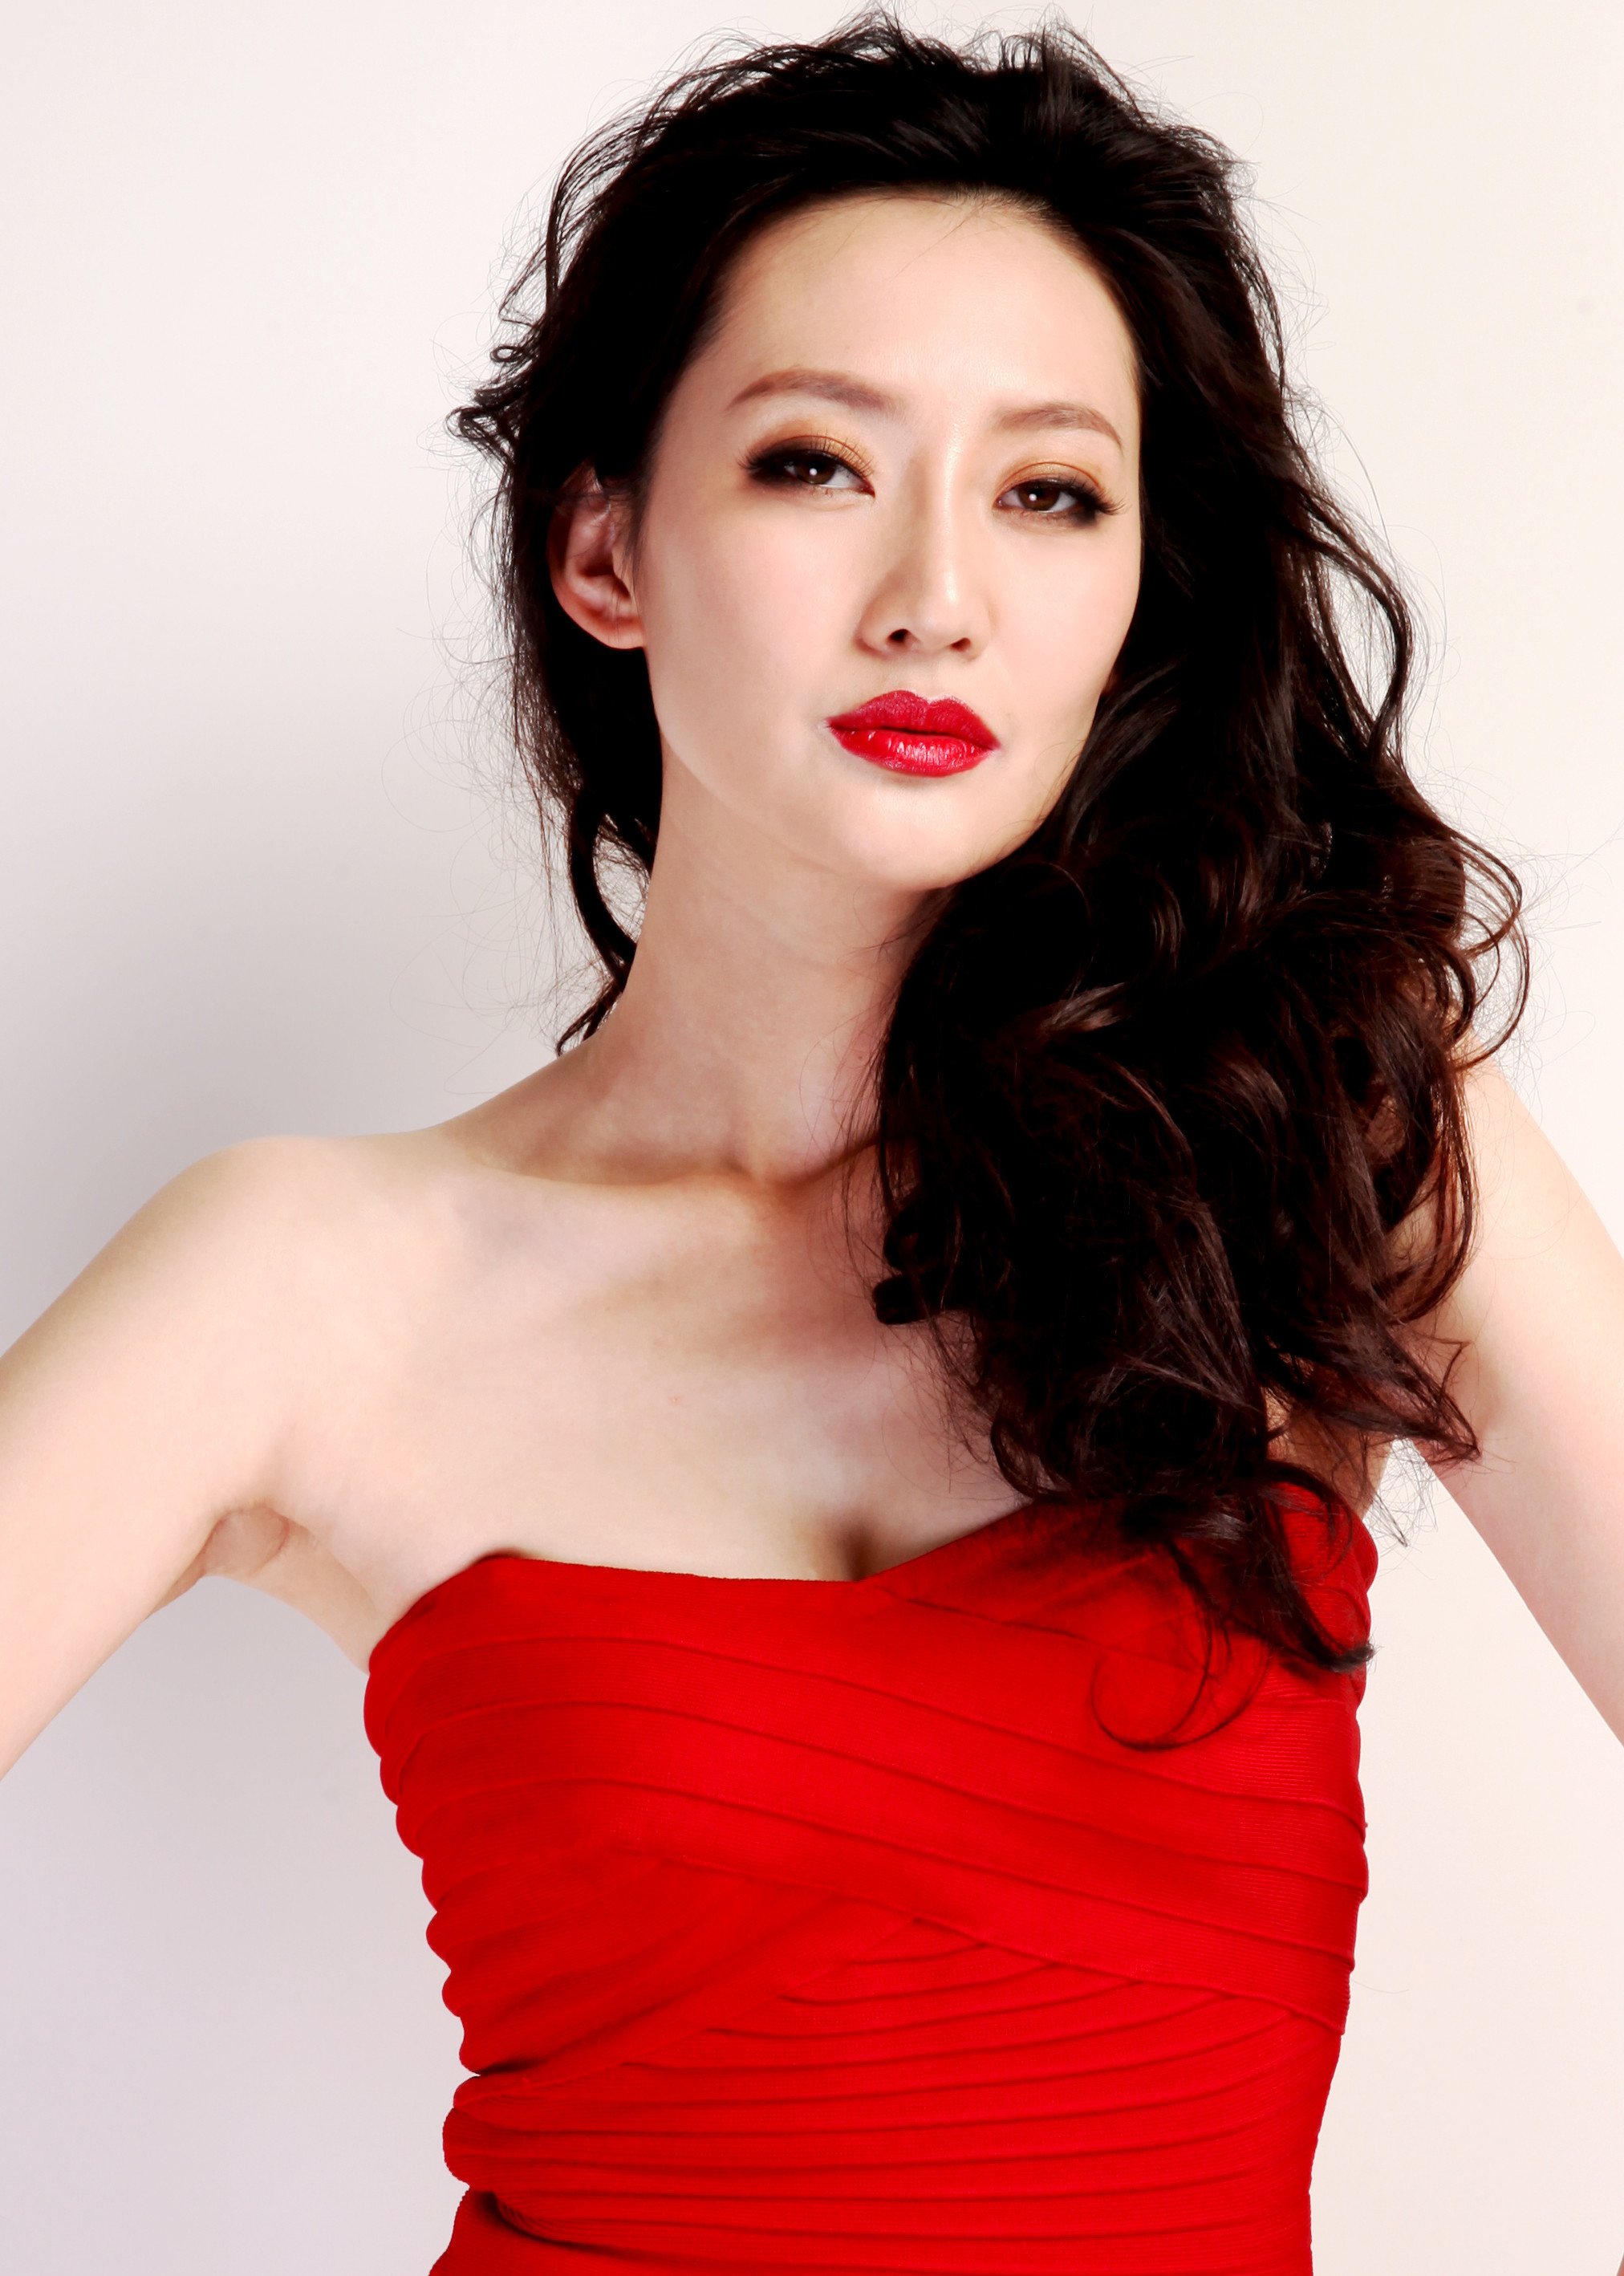 姜正阳,女,2月12日出生于新疆哈密,毕业于重庆大学,中国内地女演员